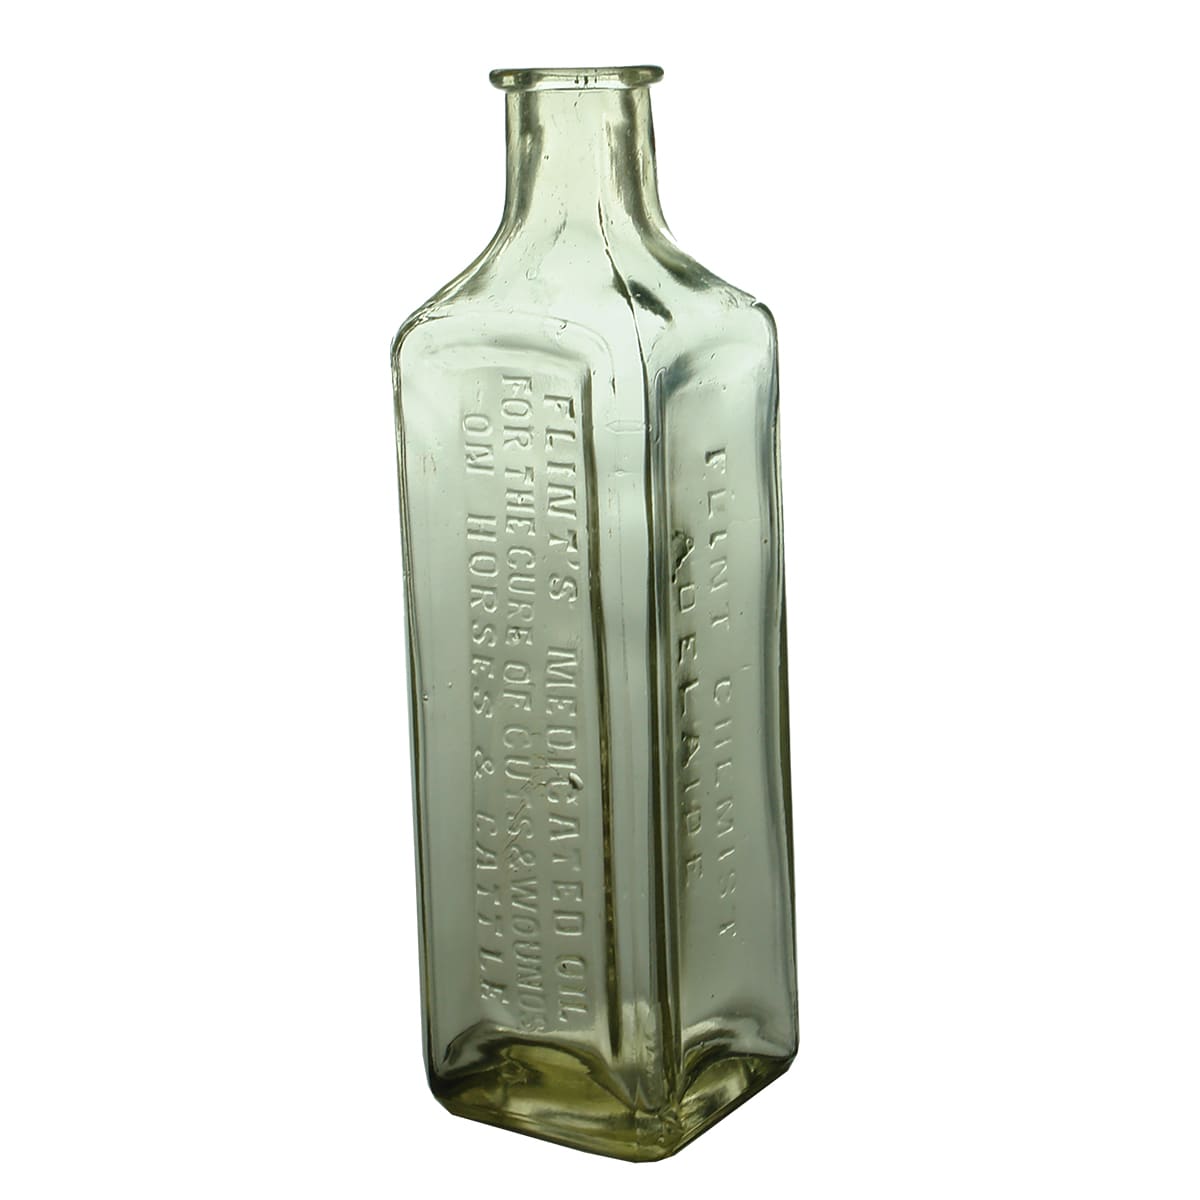 Vet Bottle. Flint's Medicated Oils. Adelaide. Clear. 6 oz.